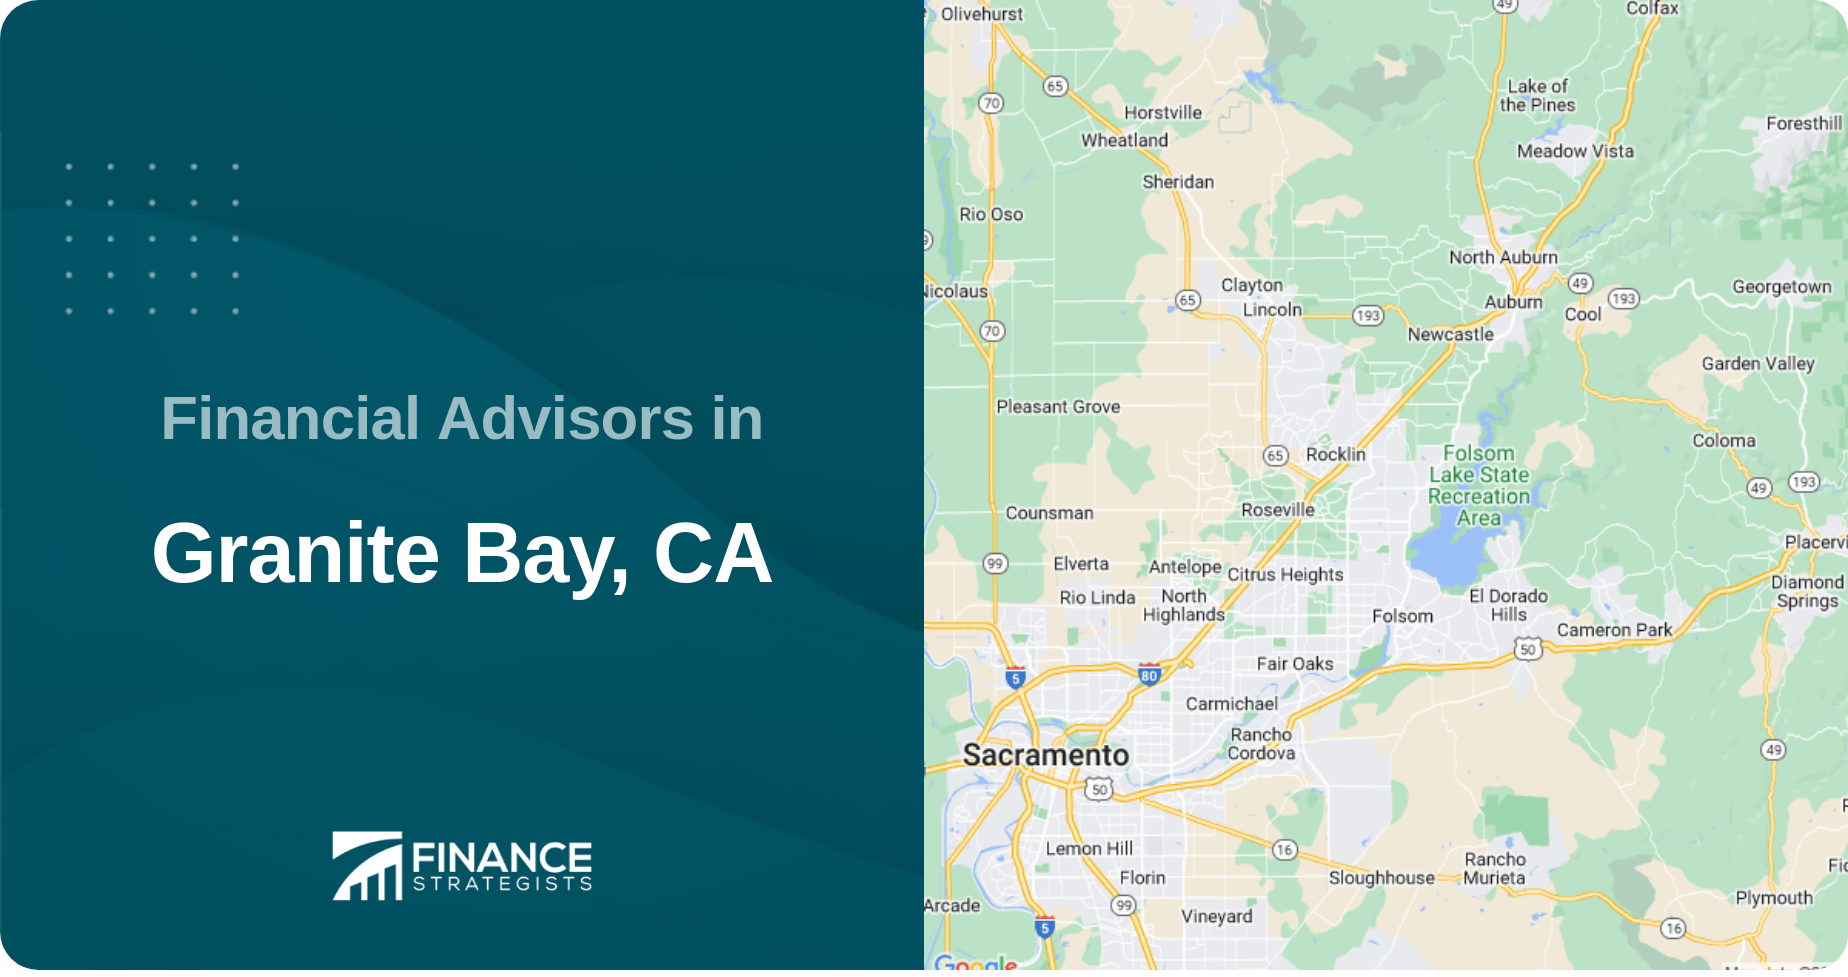 Financial Advisors in Granite Bay, CA